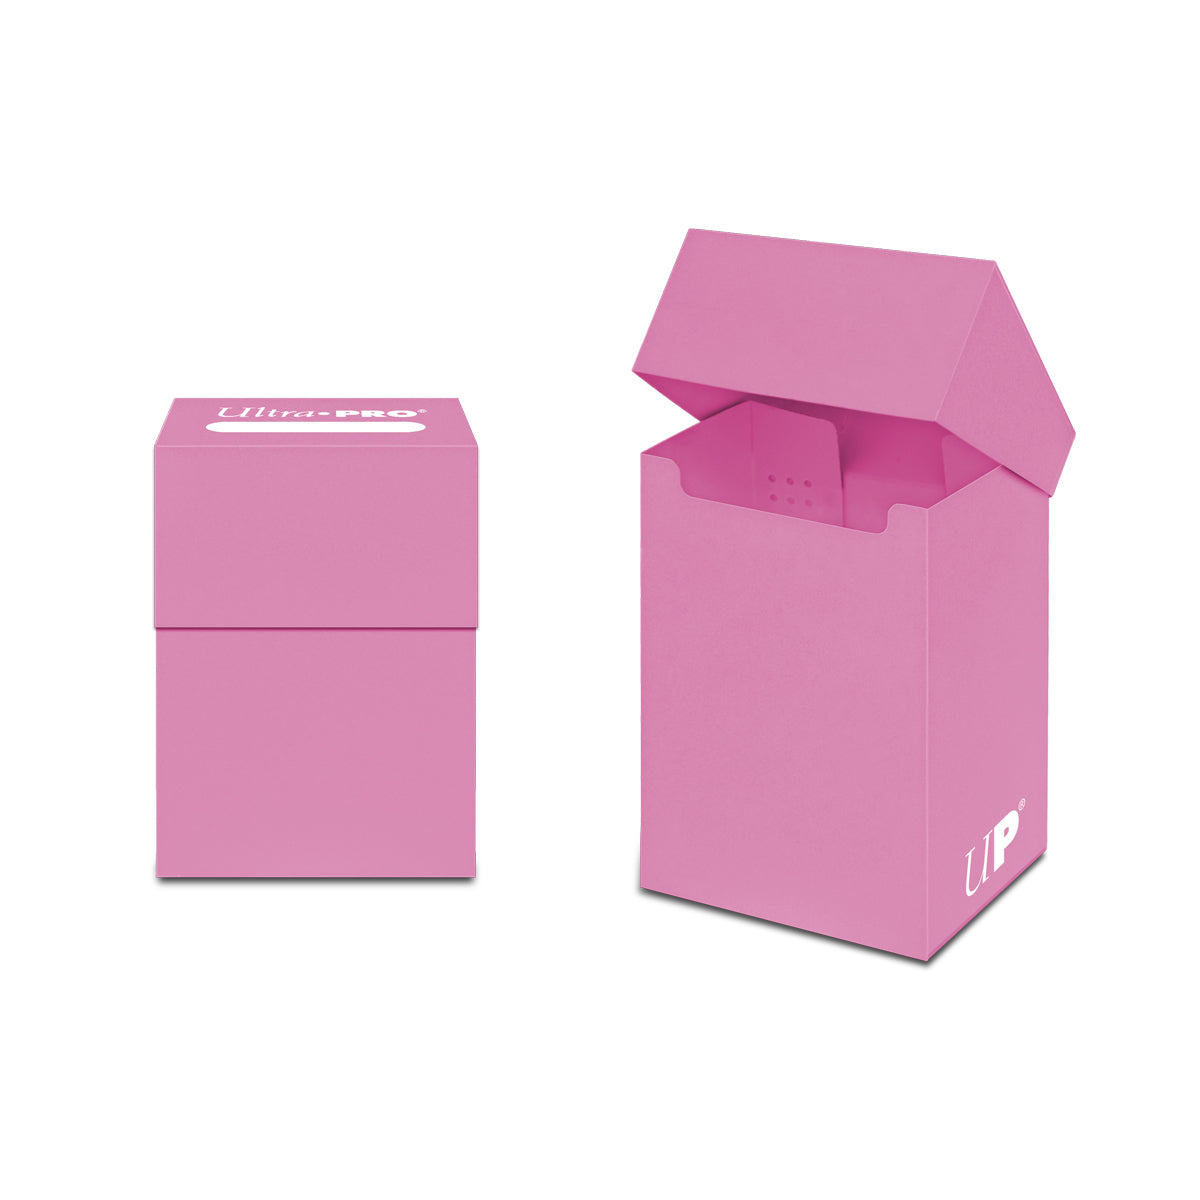 Ultra-Pro Pink Deck Box - Duel Kingdom